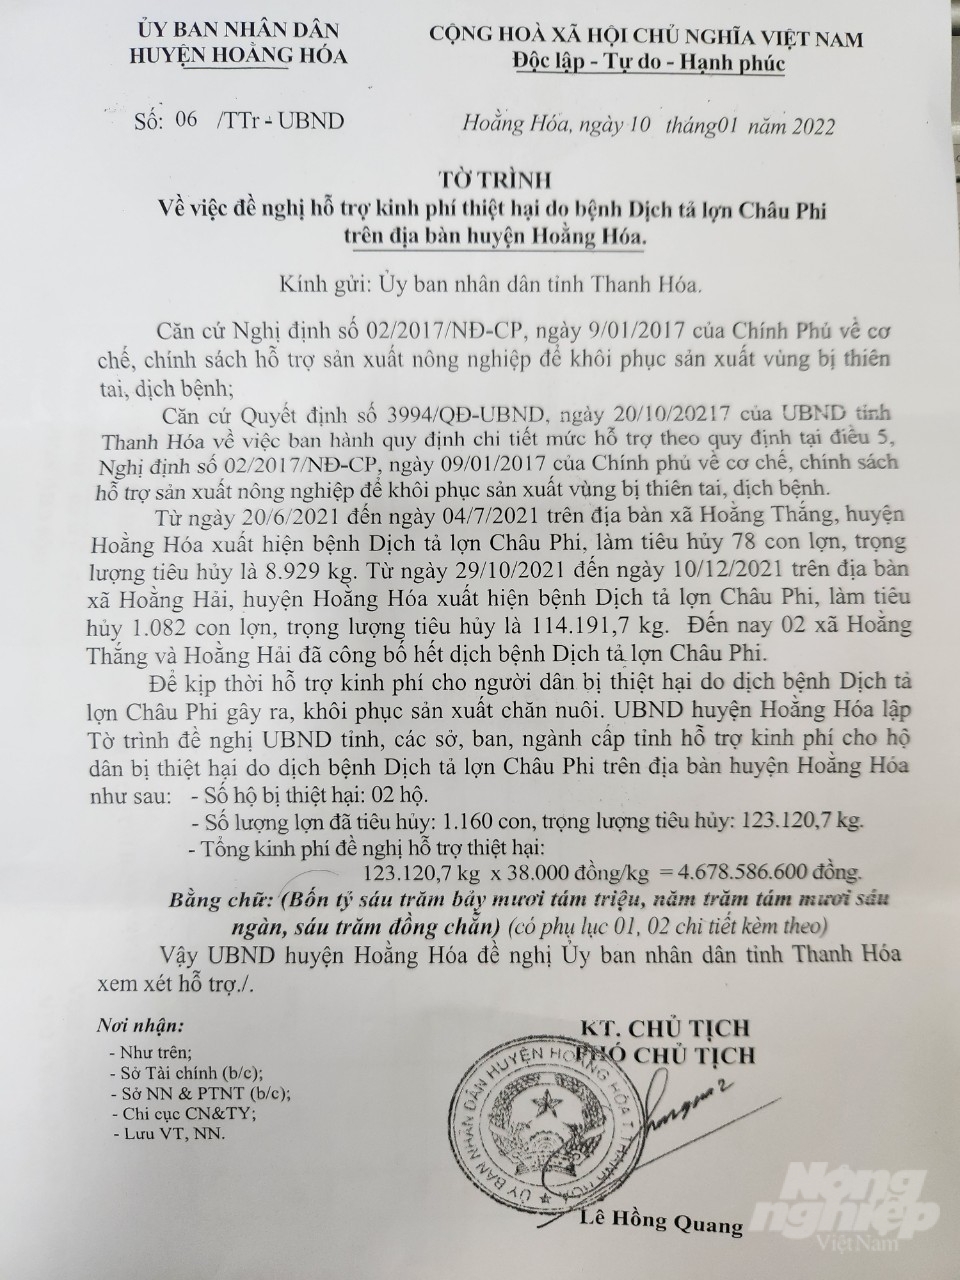 UBND huyện Hoằng Hóa đã có văn bản gửi UBND tỉnh về việc hỗ trợ các hộ dân bị thiệt hại do dịch bệnh nhưng chưa nhận được phản hồi. Ảnh: Quốc Toản.